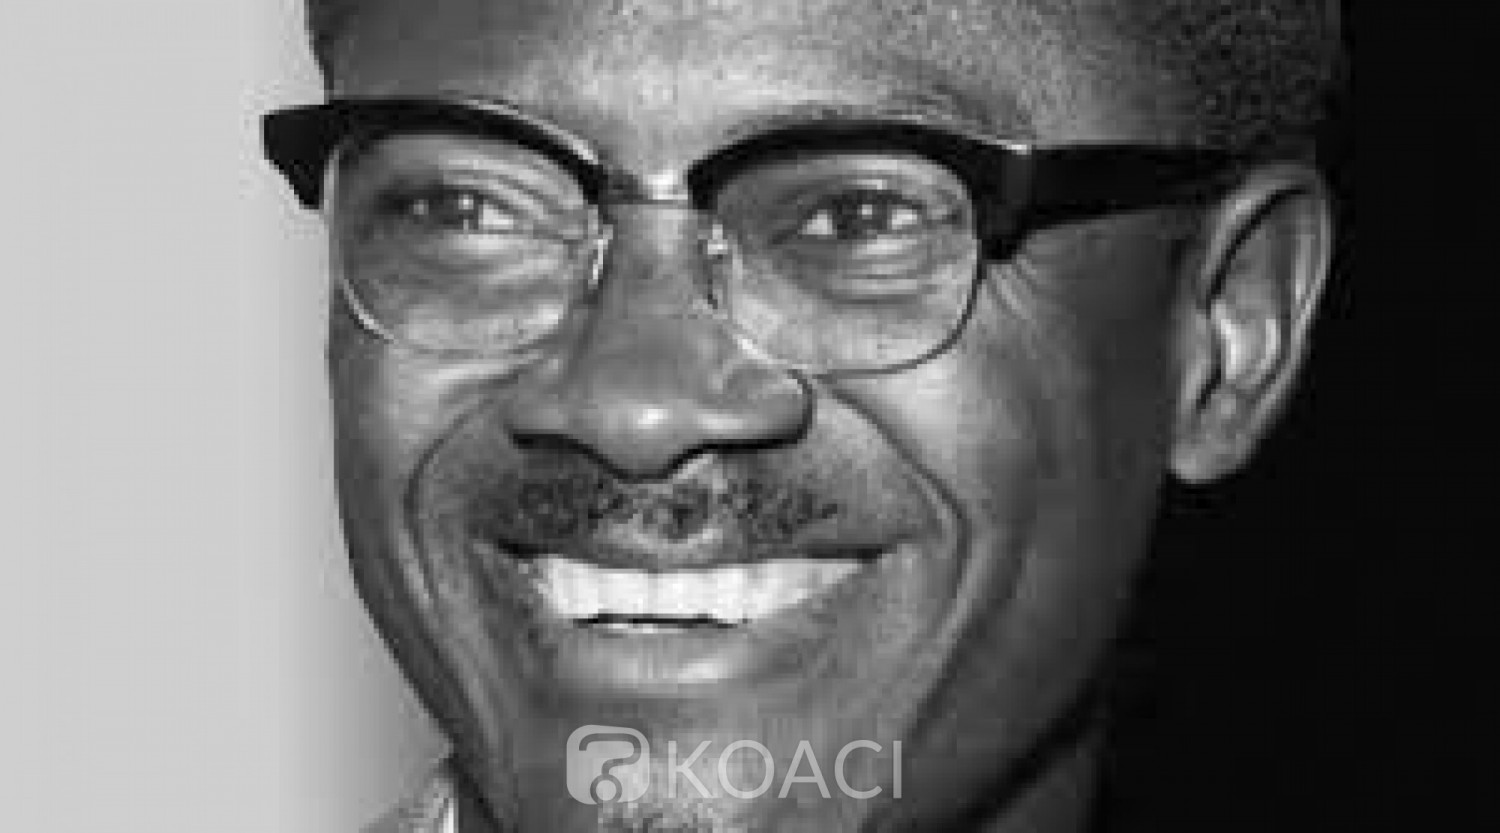 RDC : La Belgique accepte de restituer «une dent » de Patrice Lumumba à sa famille